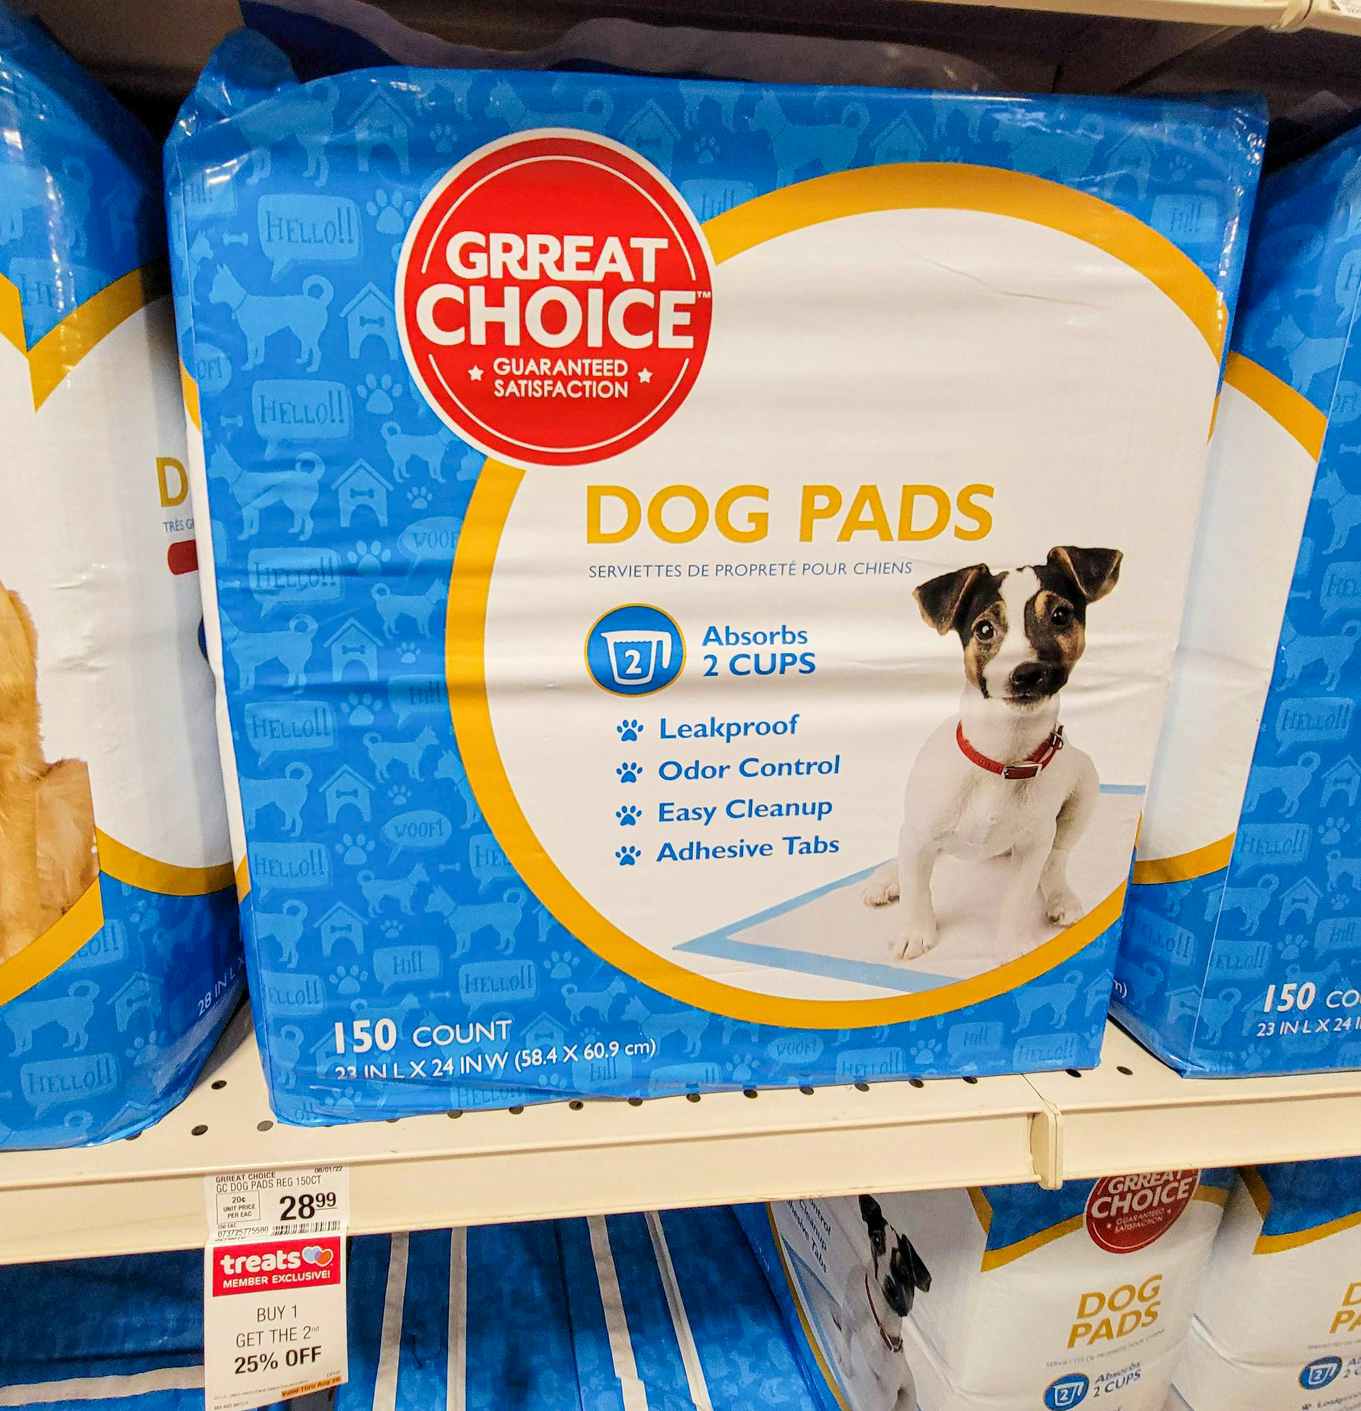 a bag of 150 dog pads on a shelf